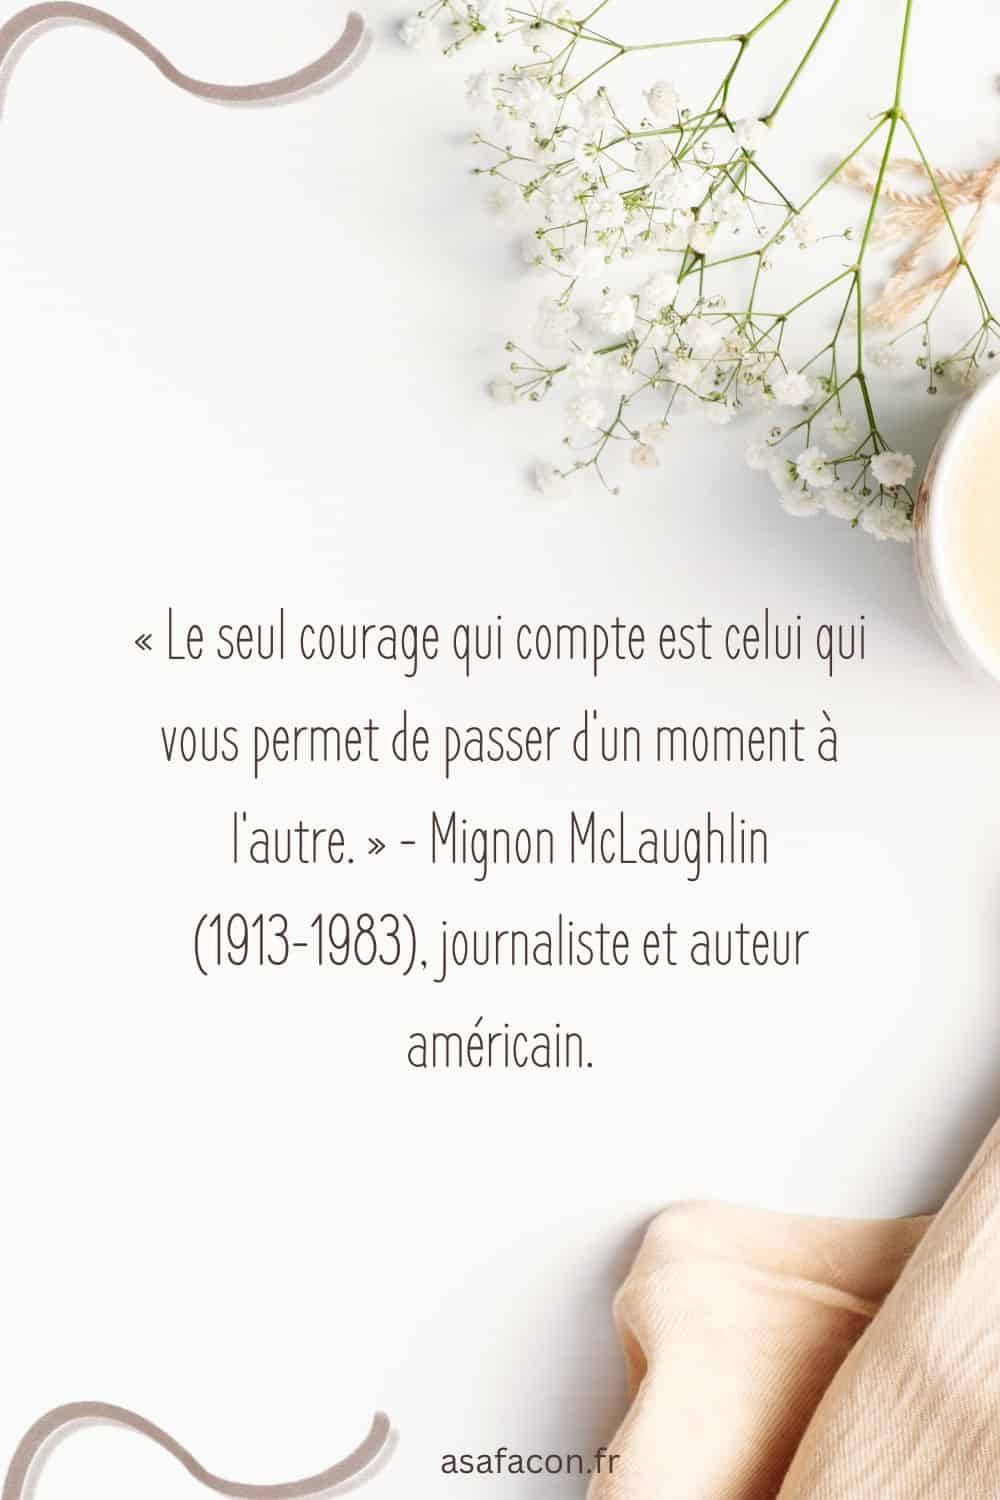 « Le seul courage qui compte est celui qui vous permet de passer d'un moment à l'autre. » - Mignon McLaughlin (1913-1983), journaliste et auteur américain.